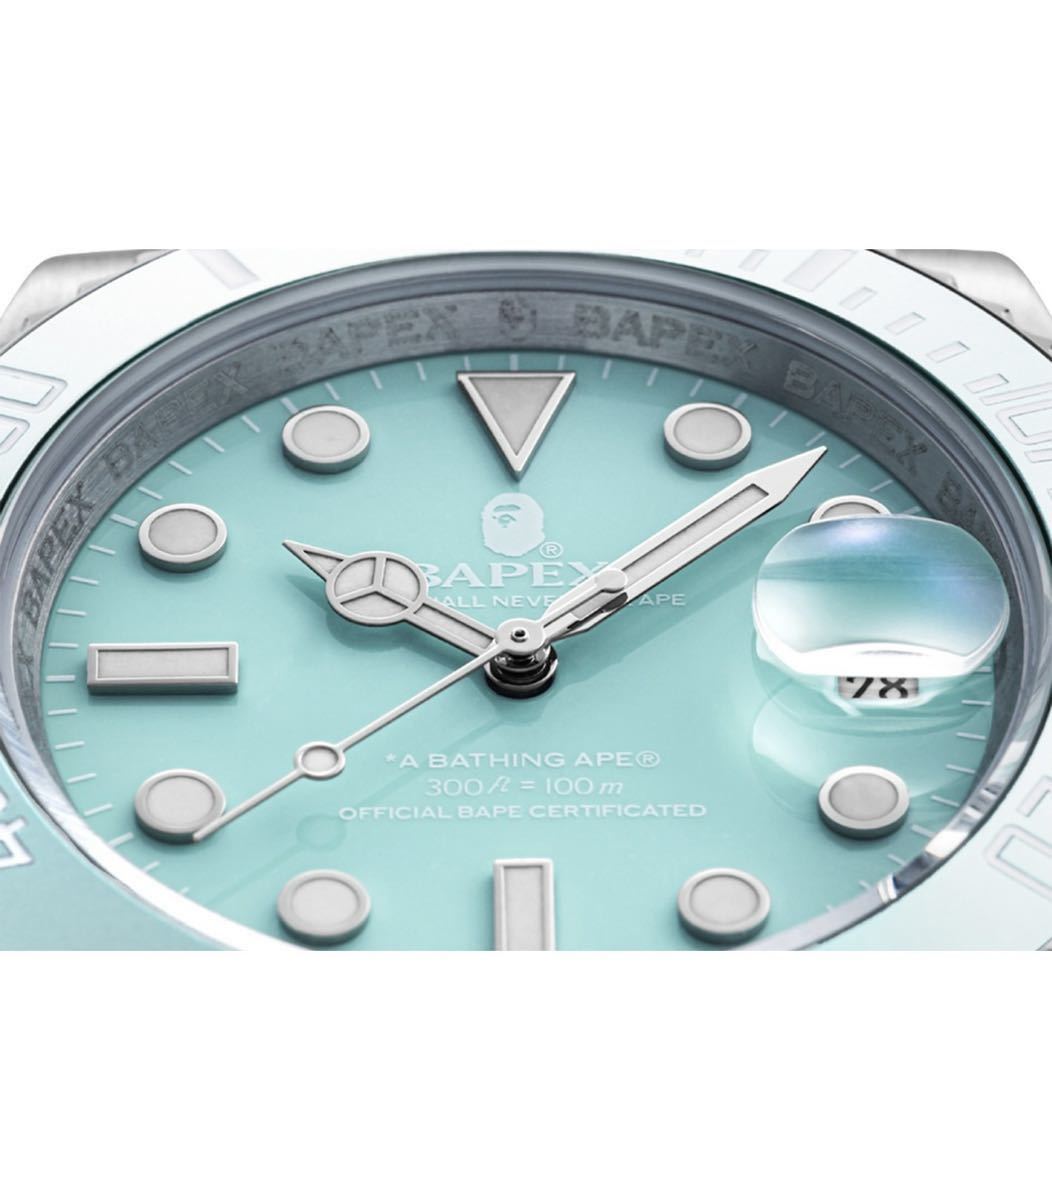 新品未使用 BAPEX TYPE M BATHING APE ベイペックス 自動巻き ROLEX エイプ サックスブルー Tiffany BLUE  100m防水 ステンレス 腕時計